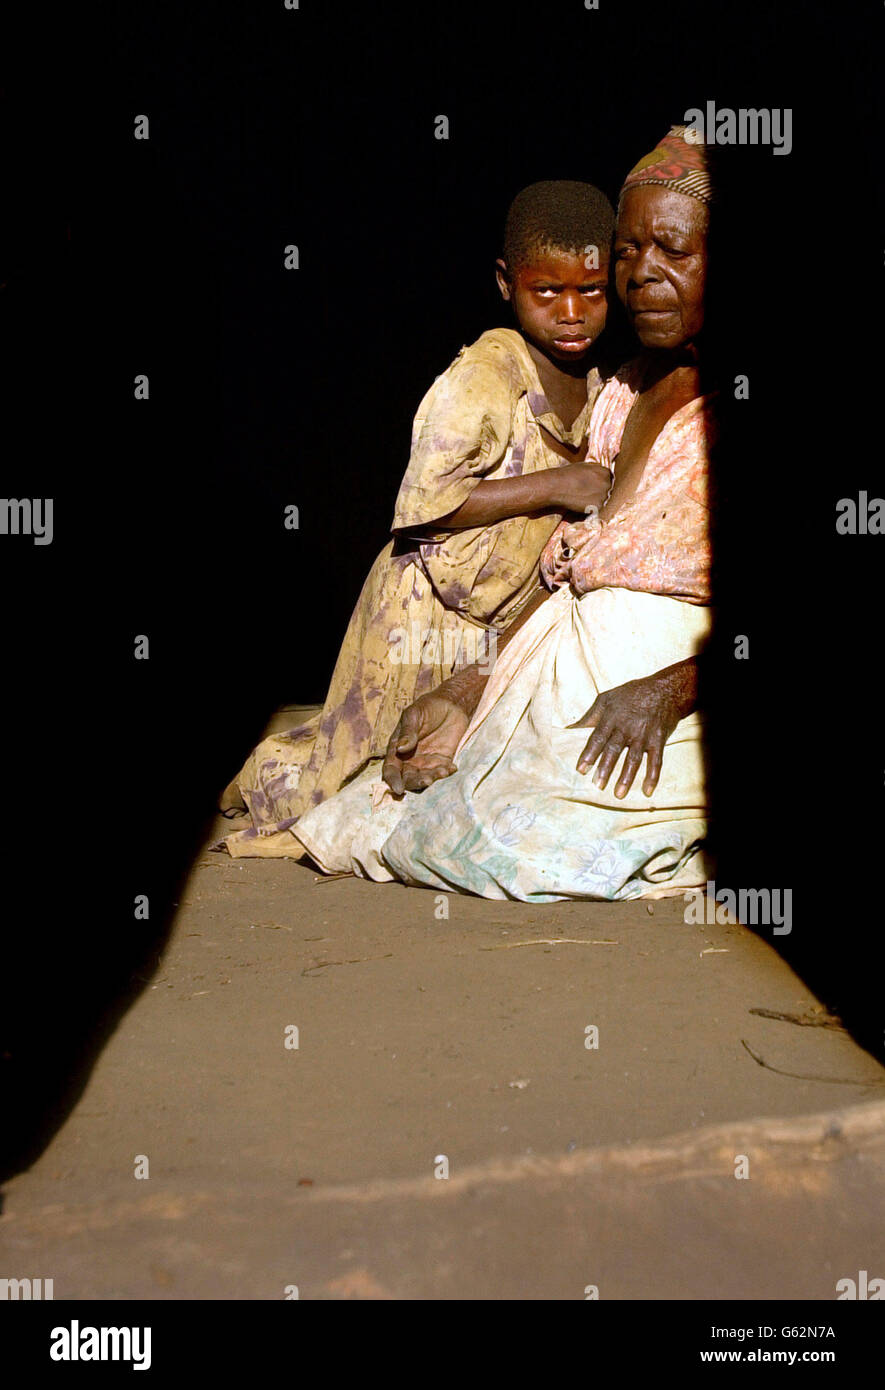 Mjiyasi Gungulou, 82 anni, conforta la sua bisnipote Mdakalira, 9 anni, alla quale fu lasciata cura dopo la morte per AIDS della nipote e del marito della nipote nel giro di un anno, nel villaggio di Nyande nel Malawi centrale. Le Nazioni Unite attualmente stimano 18.4 milioni di persone che soffrono la fame nella regione dell'Africa meridionale, e l'alta prevalenza dell'infezione da HIV rende le condizioni ancora più difficili. Foto Stock